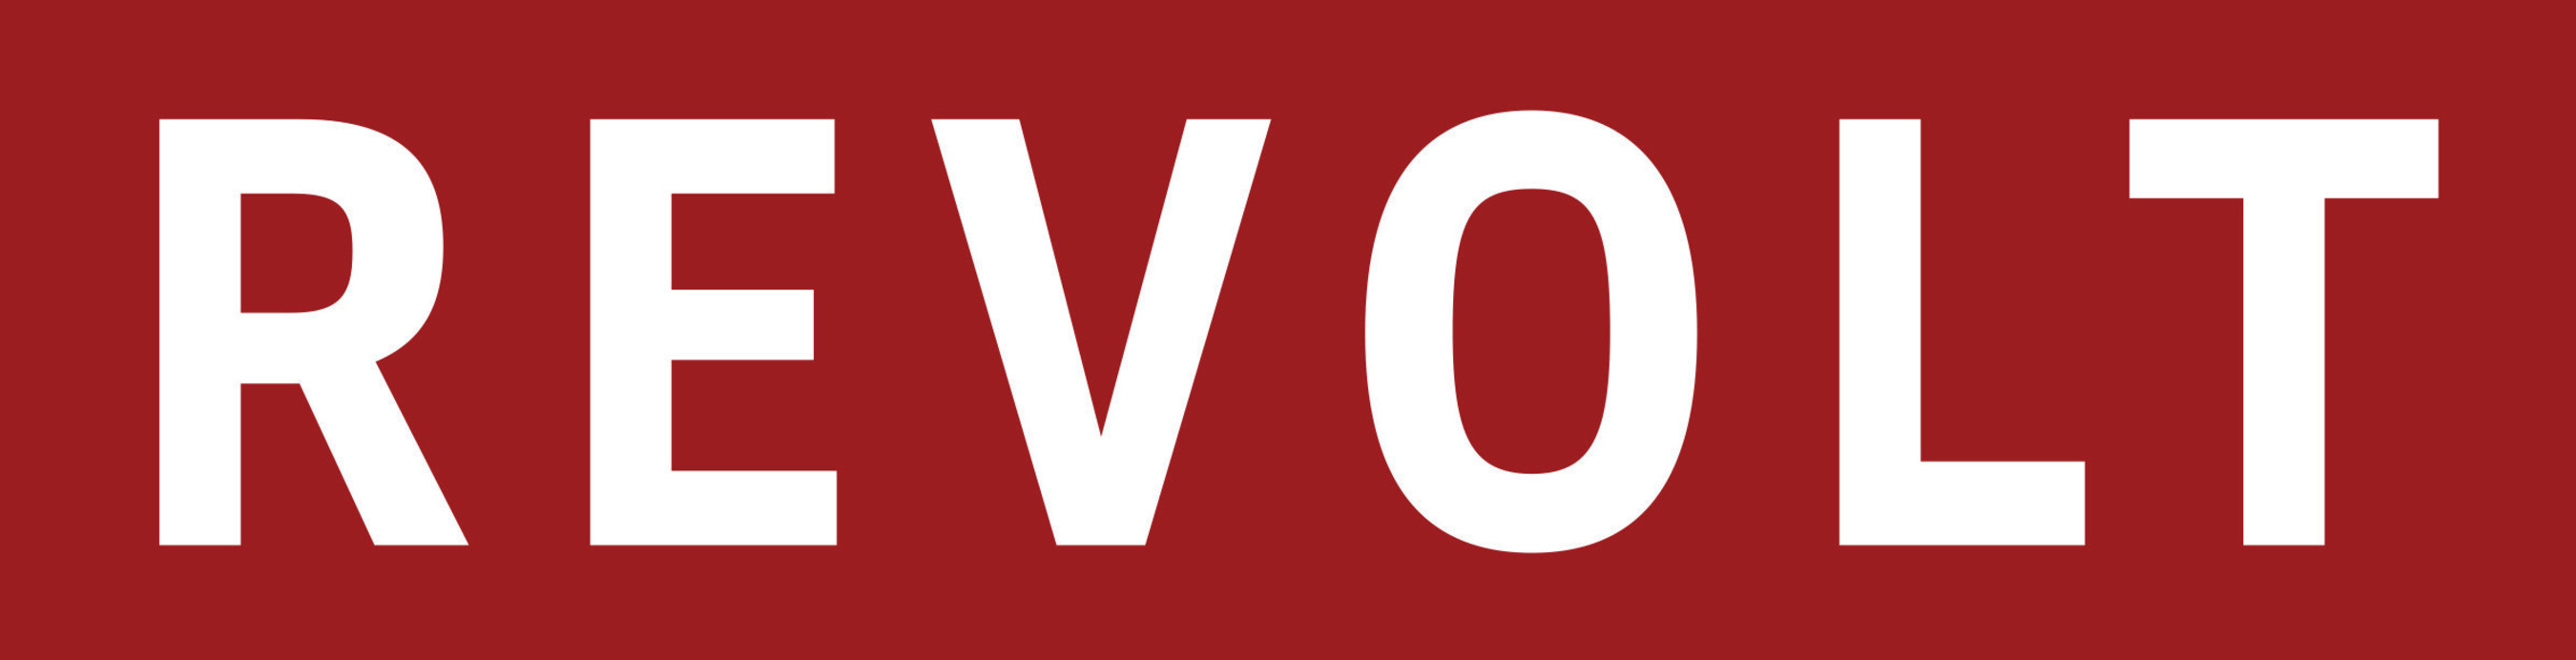 REVOLT MEDIA & TV Logo.